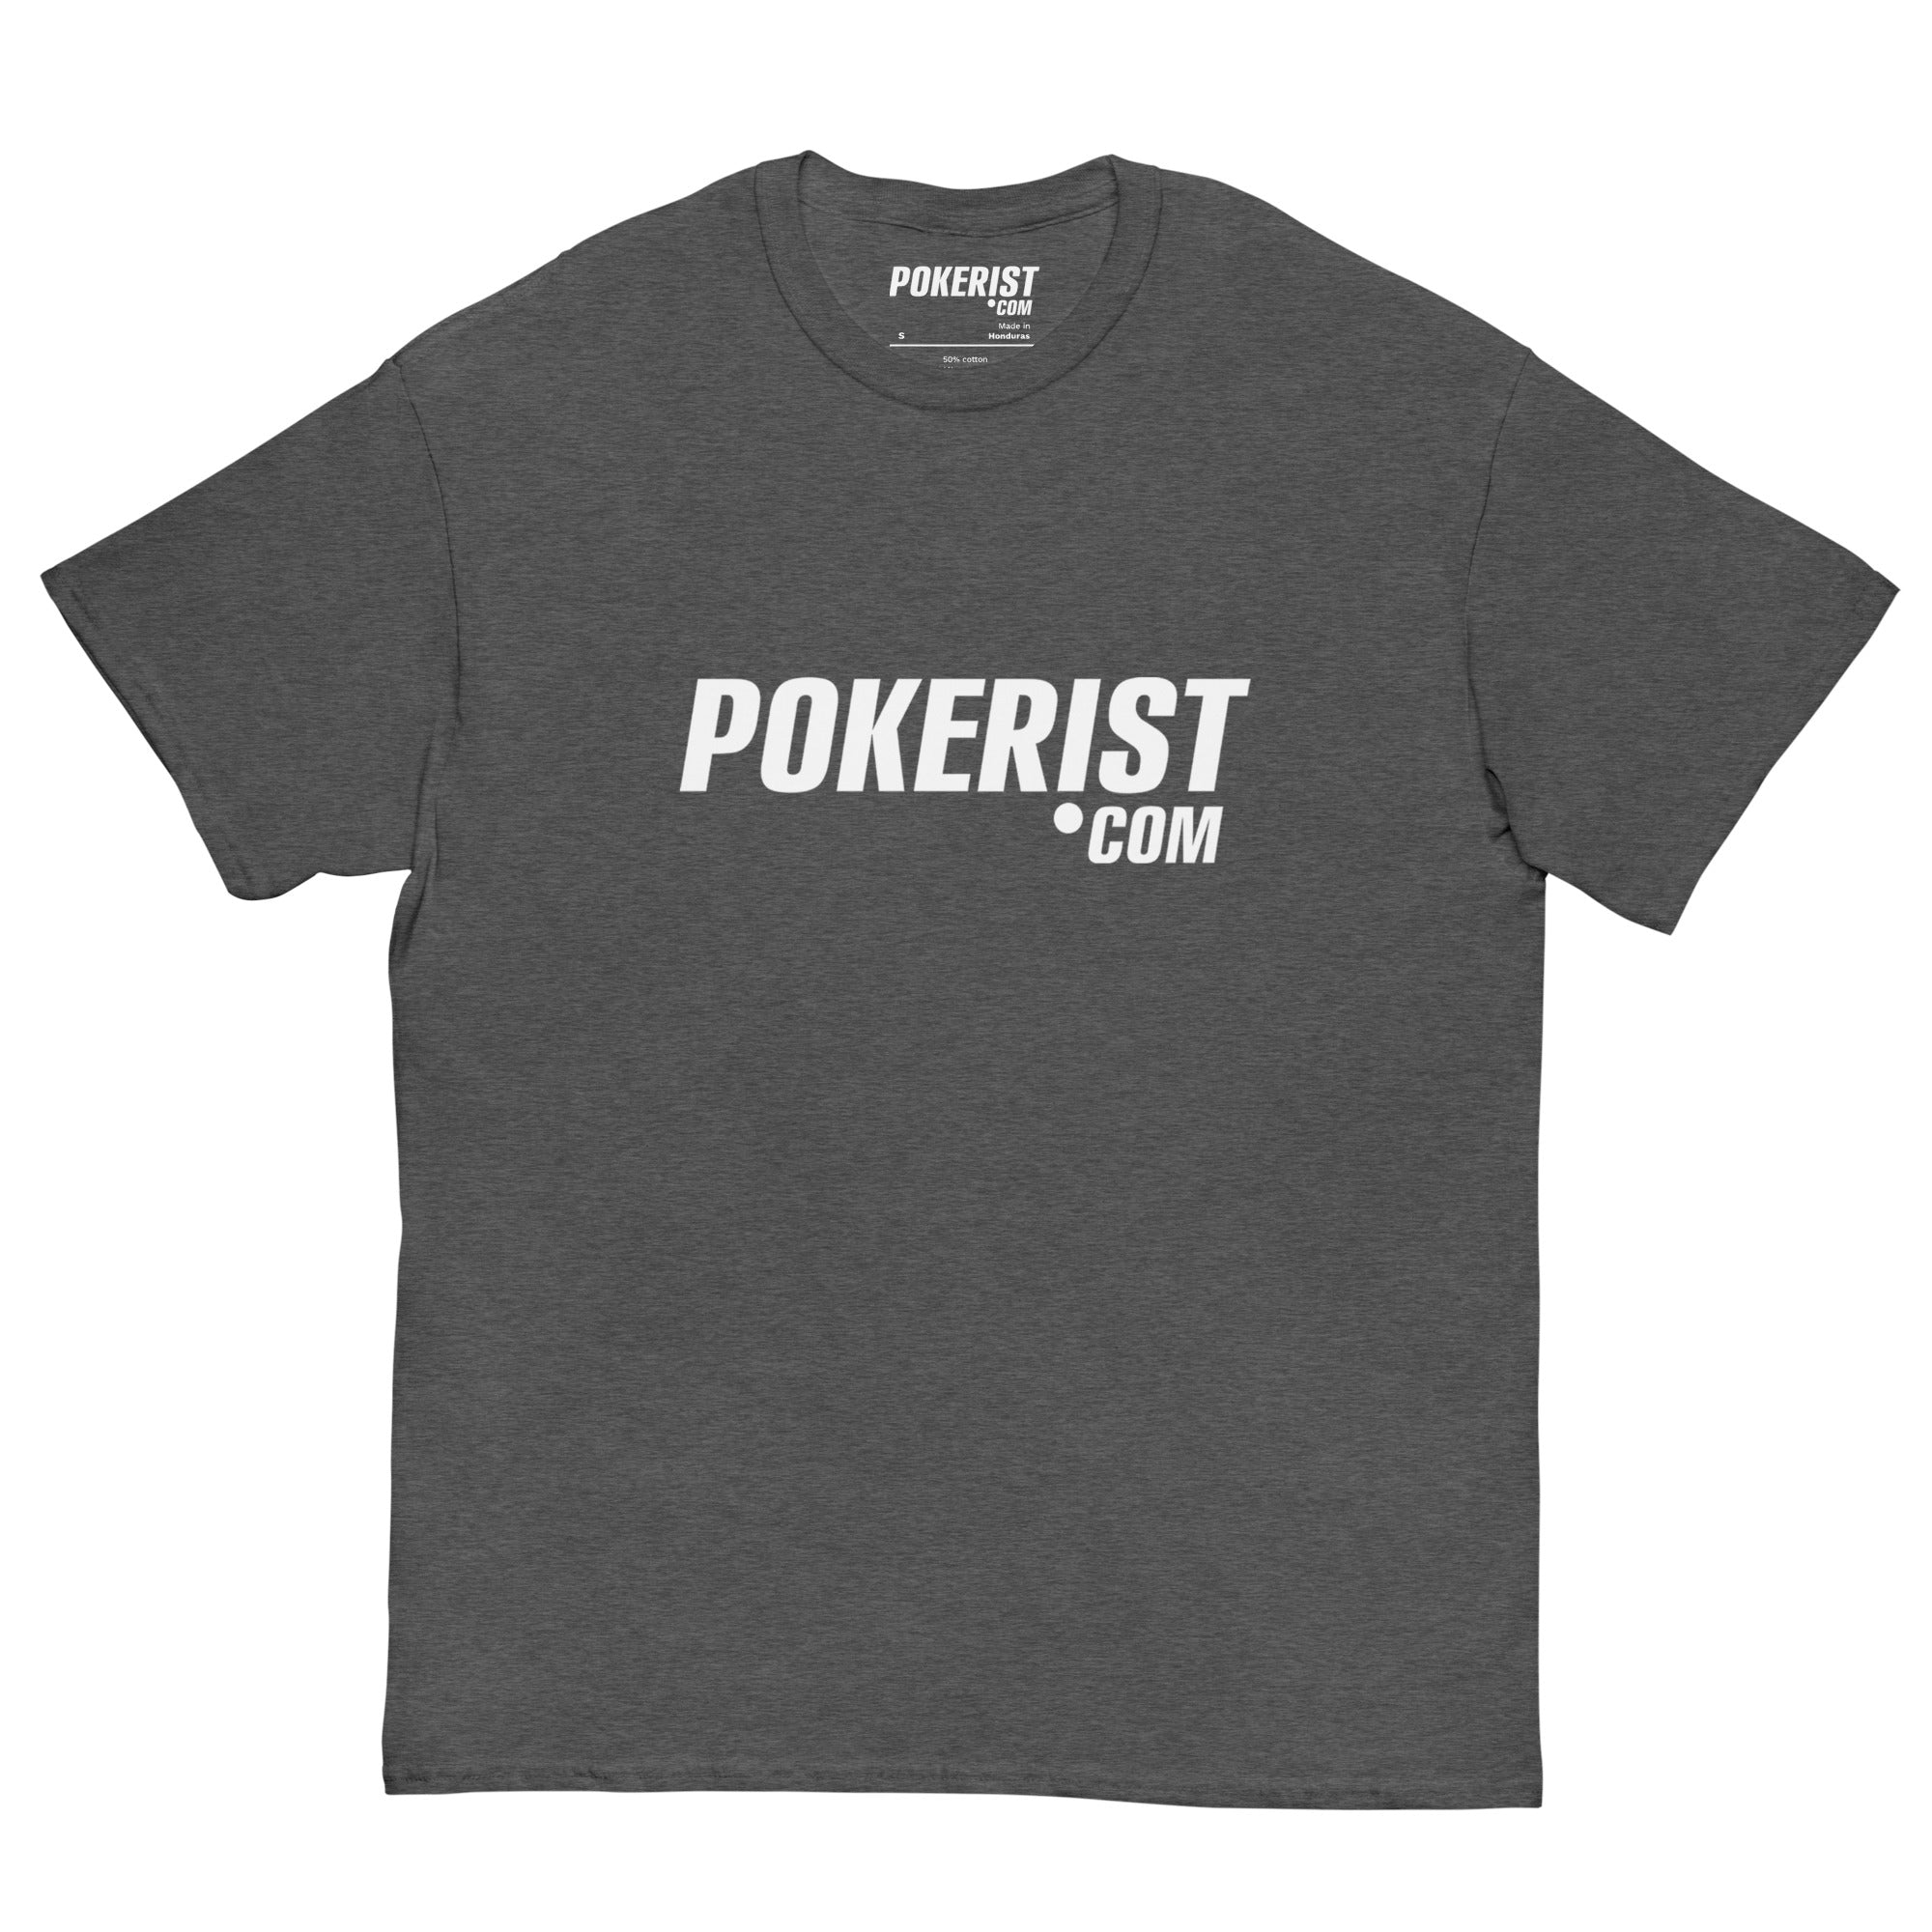 Pokerist 2.0 - Men's classic tee - Pokerist